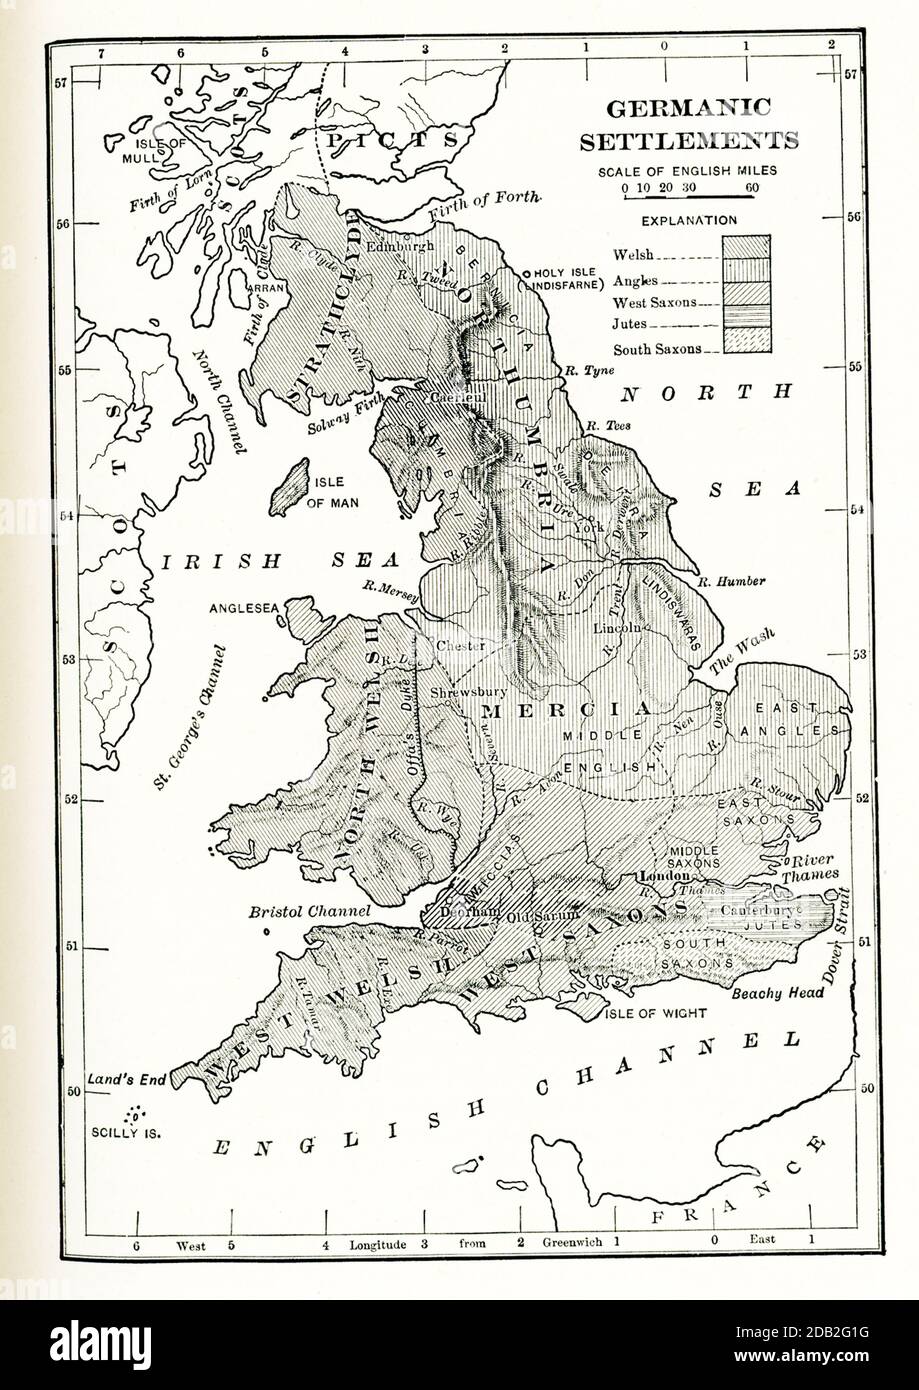 Insediamenti germanici in Inghilterra. Questa mappa mostra gli insediamenti germanici in Inghilterra in tempi antichi. Le zone ombreggiate sono: Gallese, angoli, Sassoni occidentali, giuti, Sassoni meridionali. Foto Stock